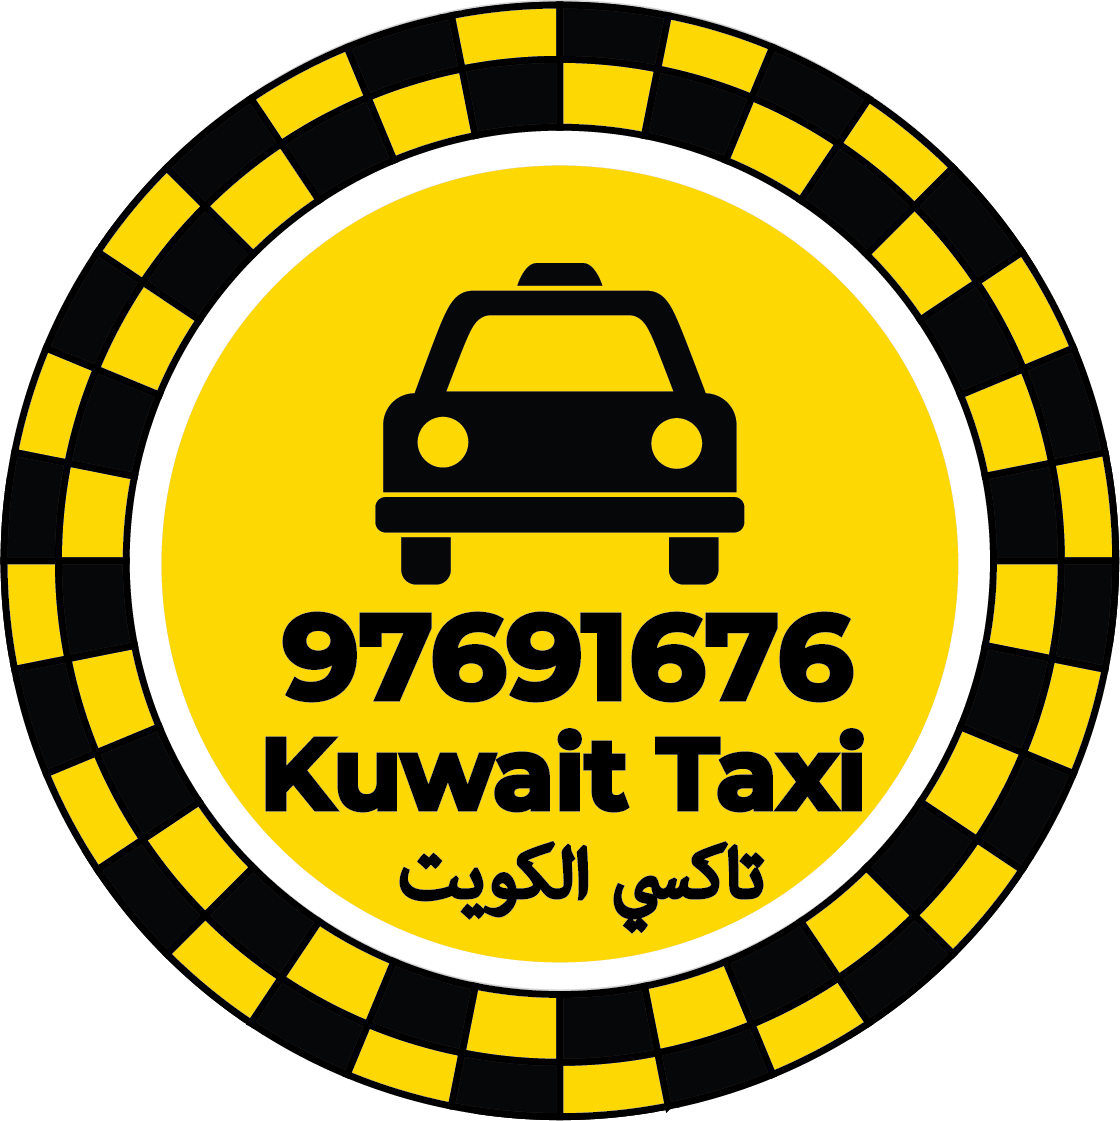 رقم تاكسي في مدينة صباح الأحمد - تاكسي مدينة صباح الأحمد كويت